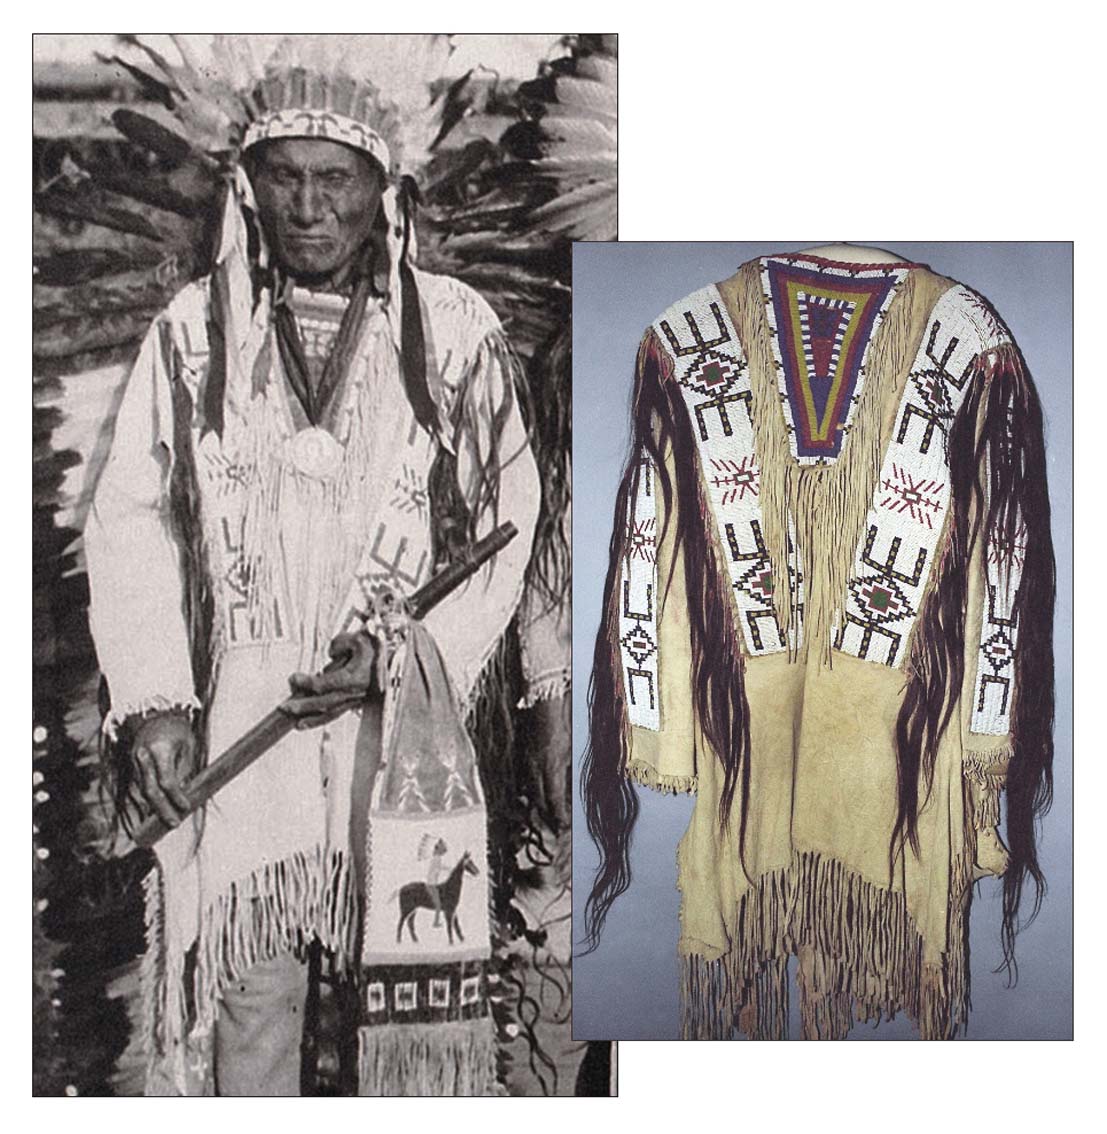 http://www.american-tribes.com/messageboards/dietmar/1913koos13.jpg